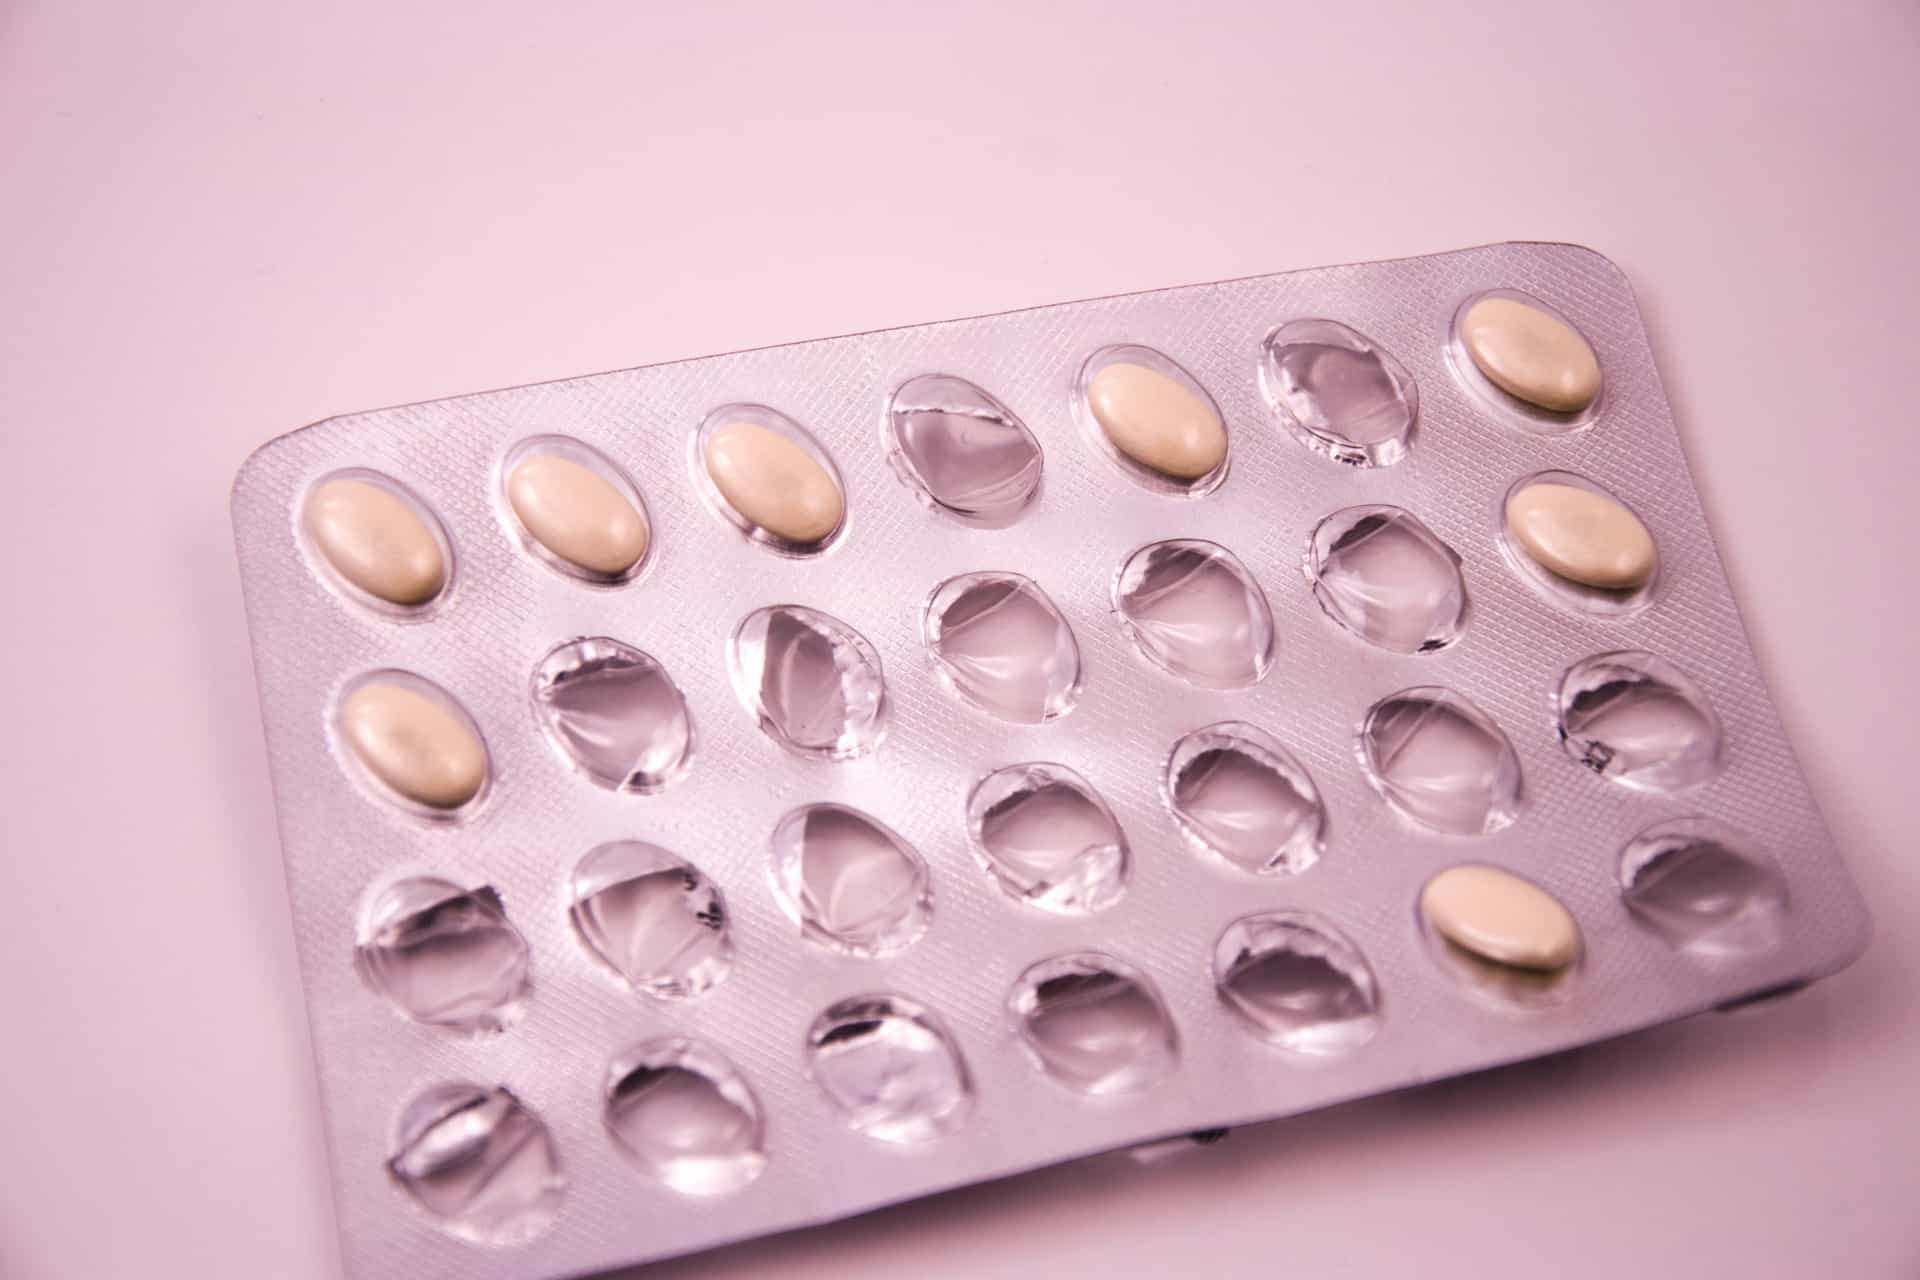 Estradiol tablets